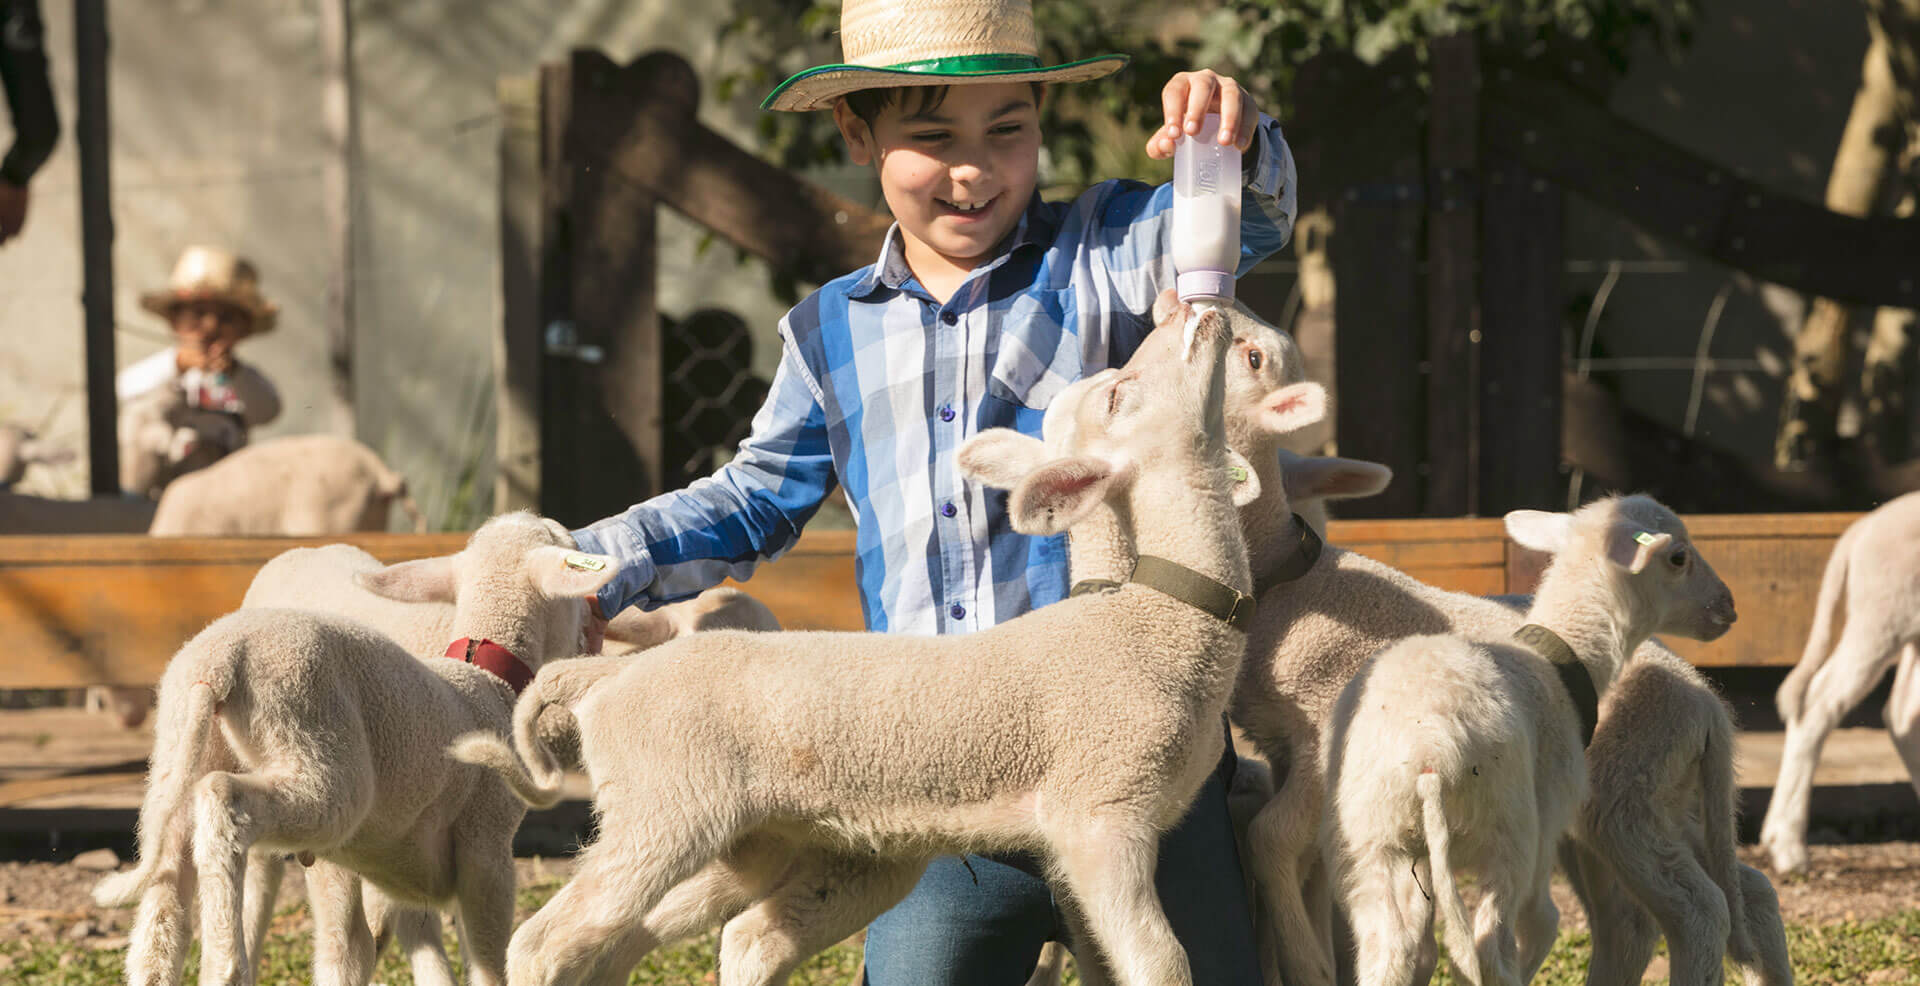 Menino amamentando ovelhas bebês